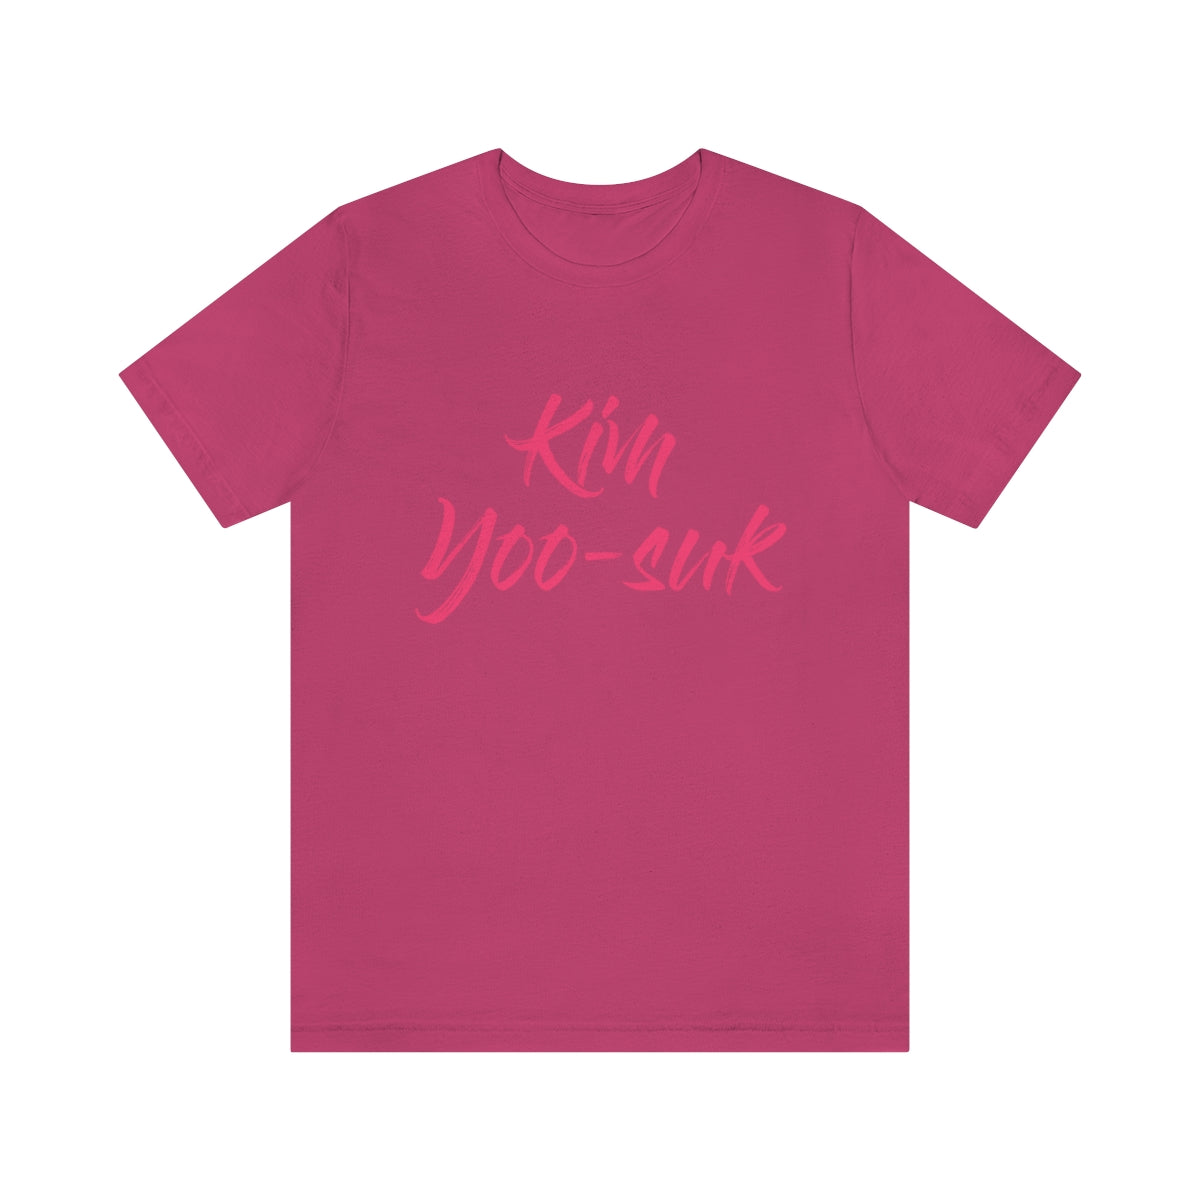 Kim Yoo-suk T-Shirt